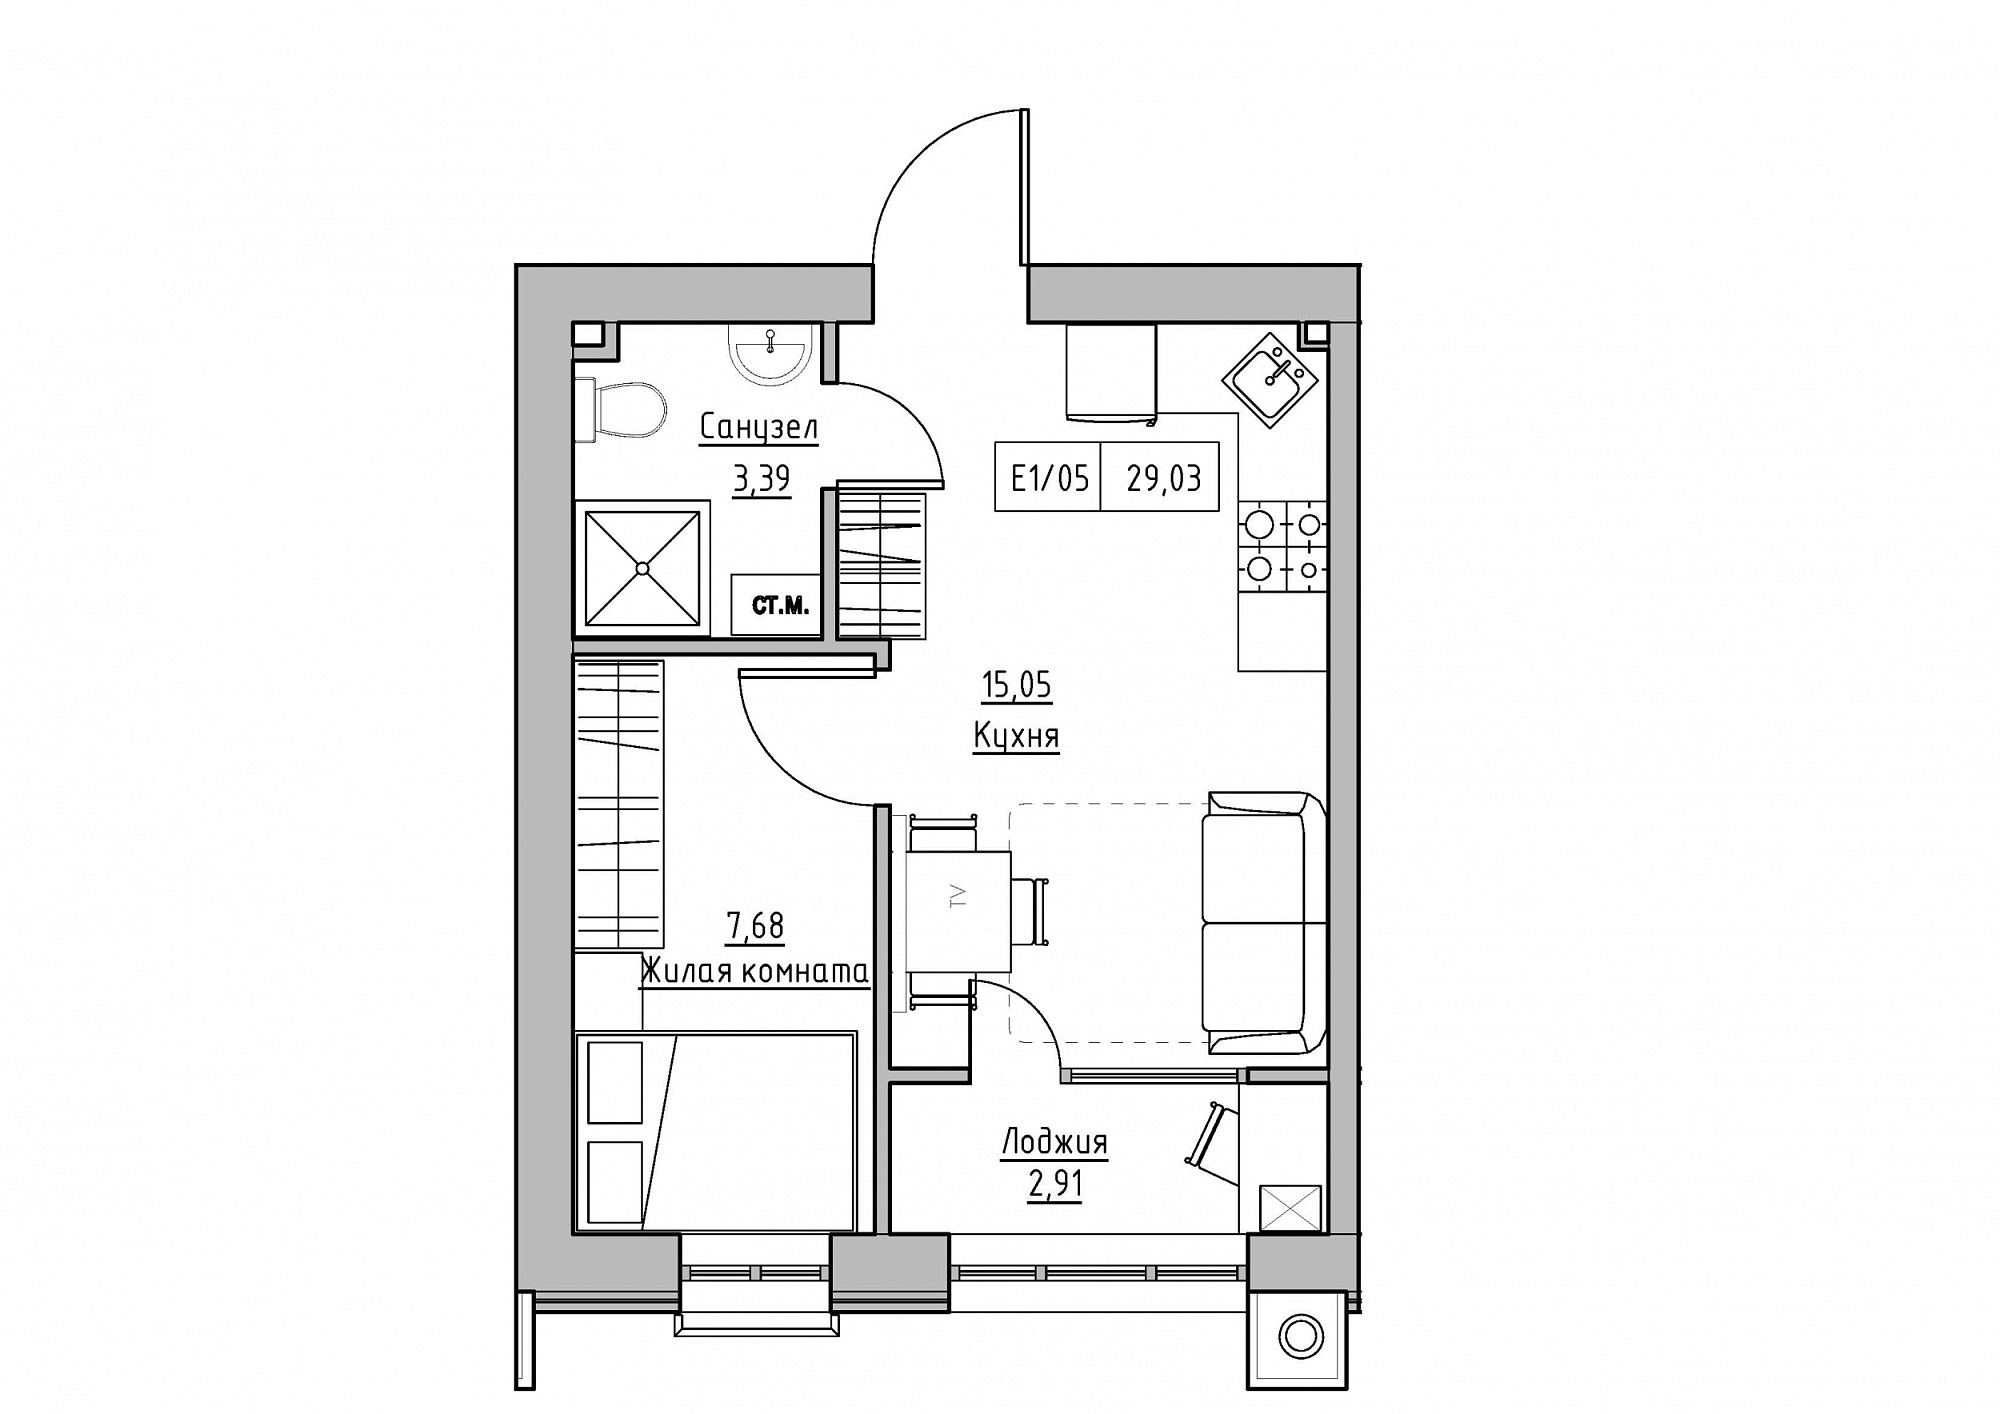 Планировка 1-к квартира площей 29.03м2, KS-012-01/0007.